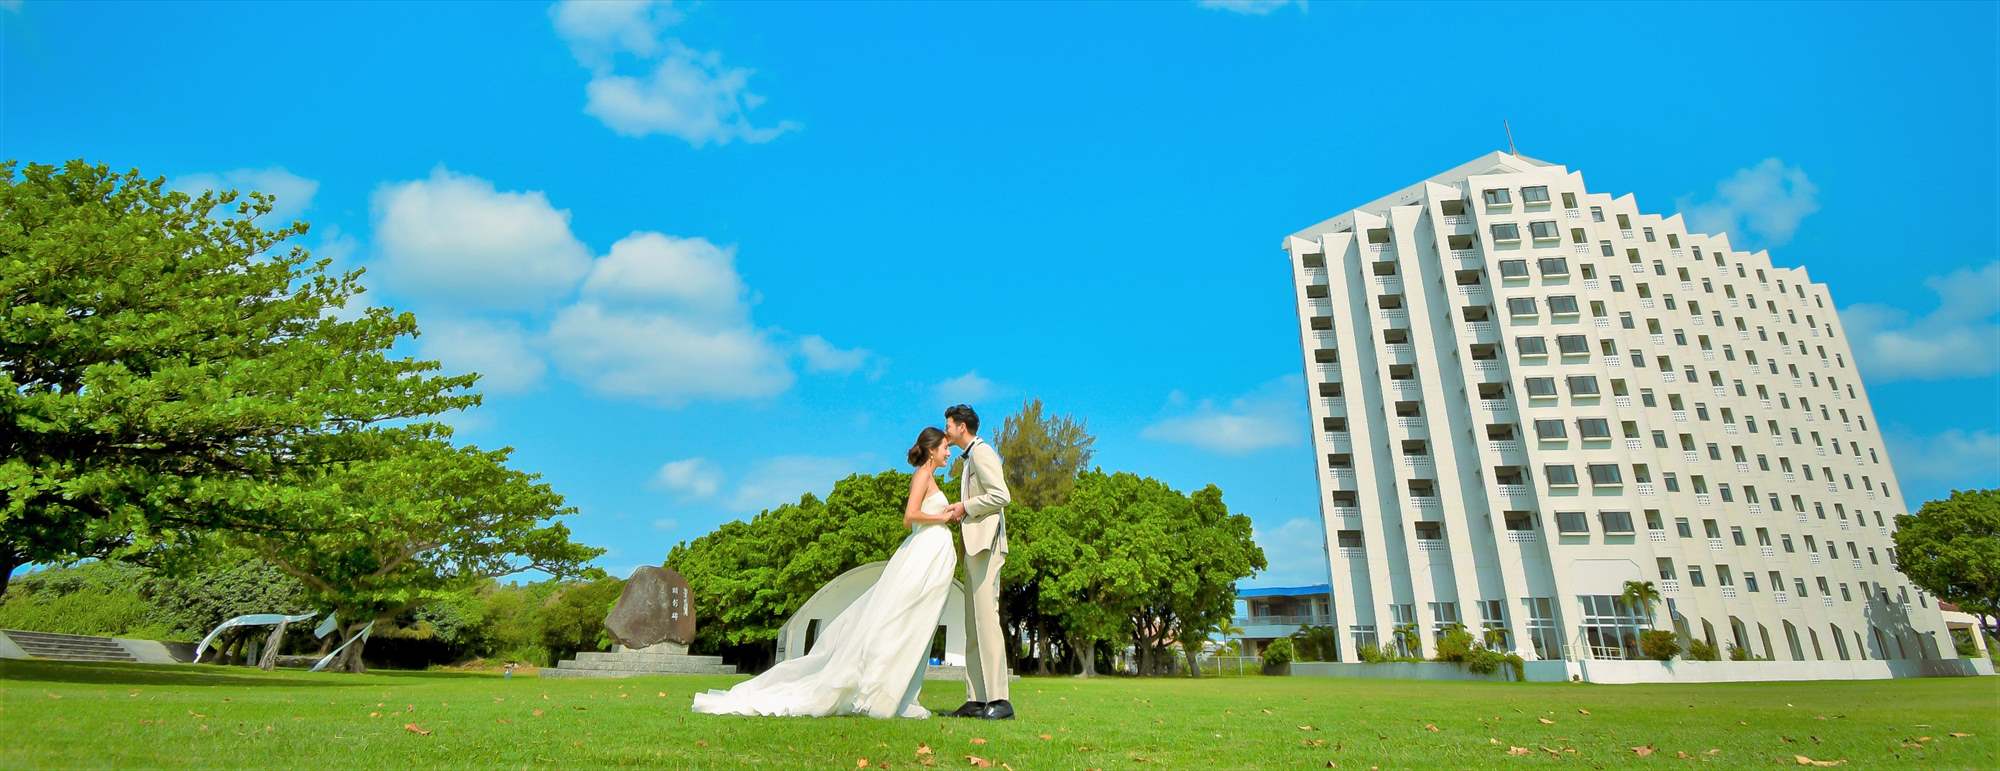 ホテル・ロイヤル・マリン・パレス石垣島・沖縄　フォトウェディング・挙式前撮影・結婚写真